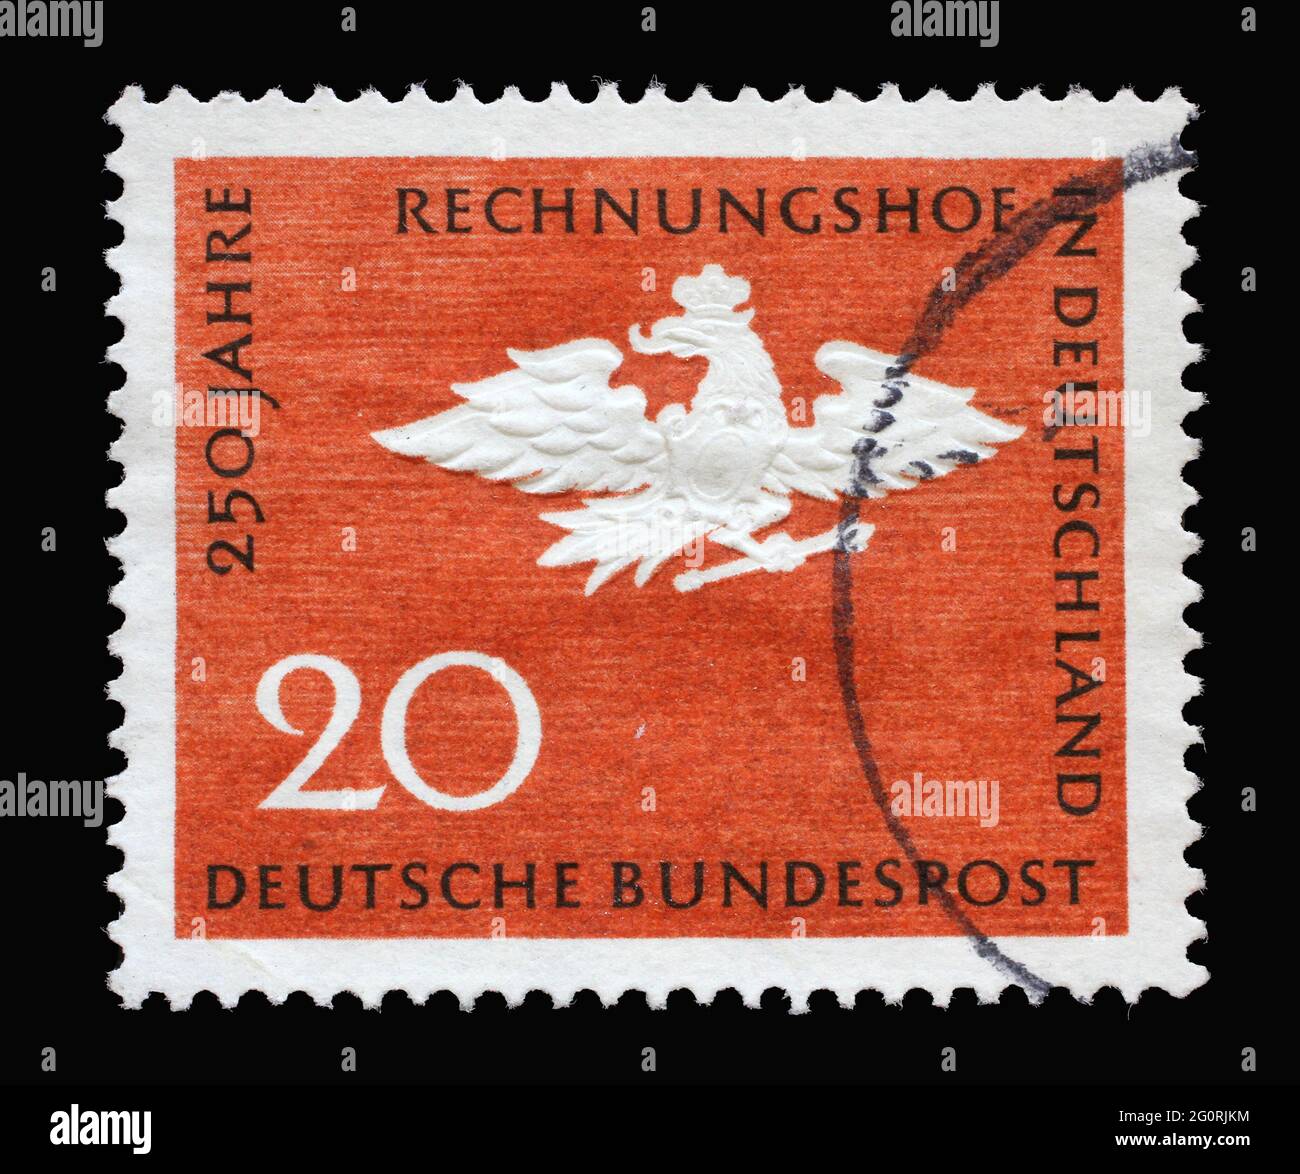 Timbre imprimé en Allemagne en l'honneur du 250e anniversaire de la Cour des comptes allemande, montre l'aigle prussien, vers 1964 Banque D'Images